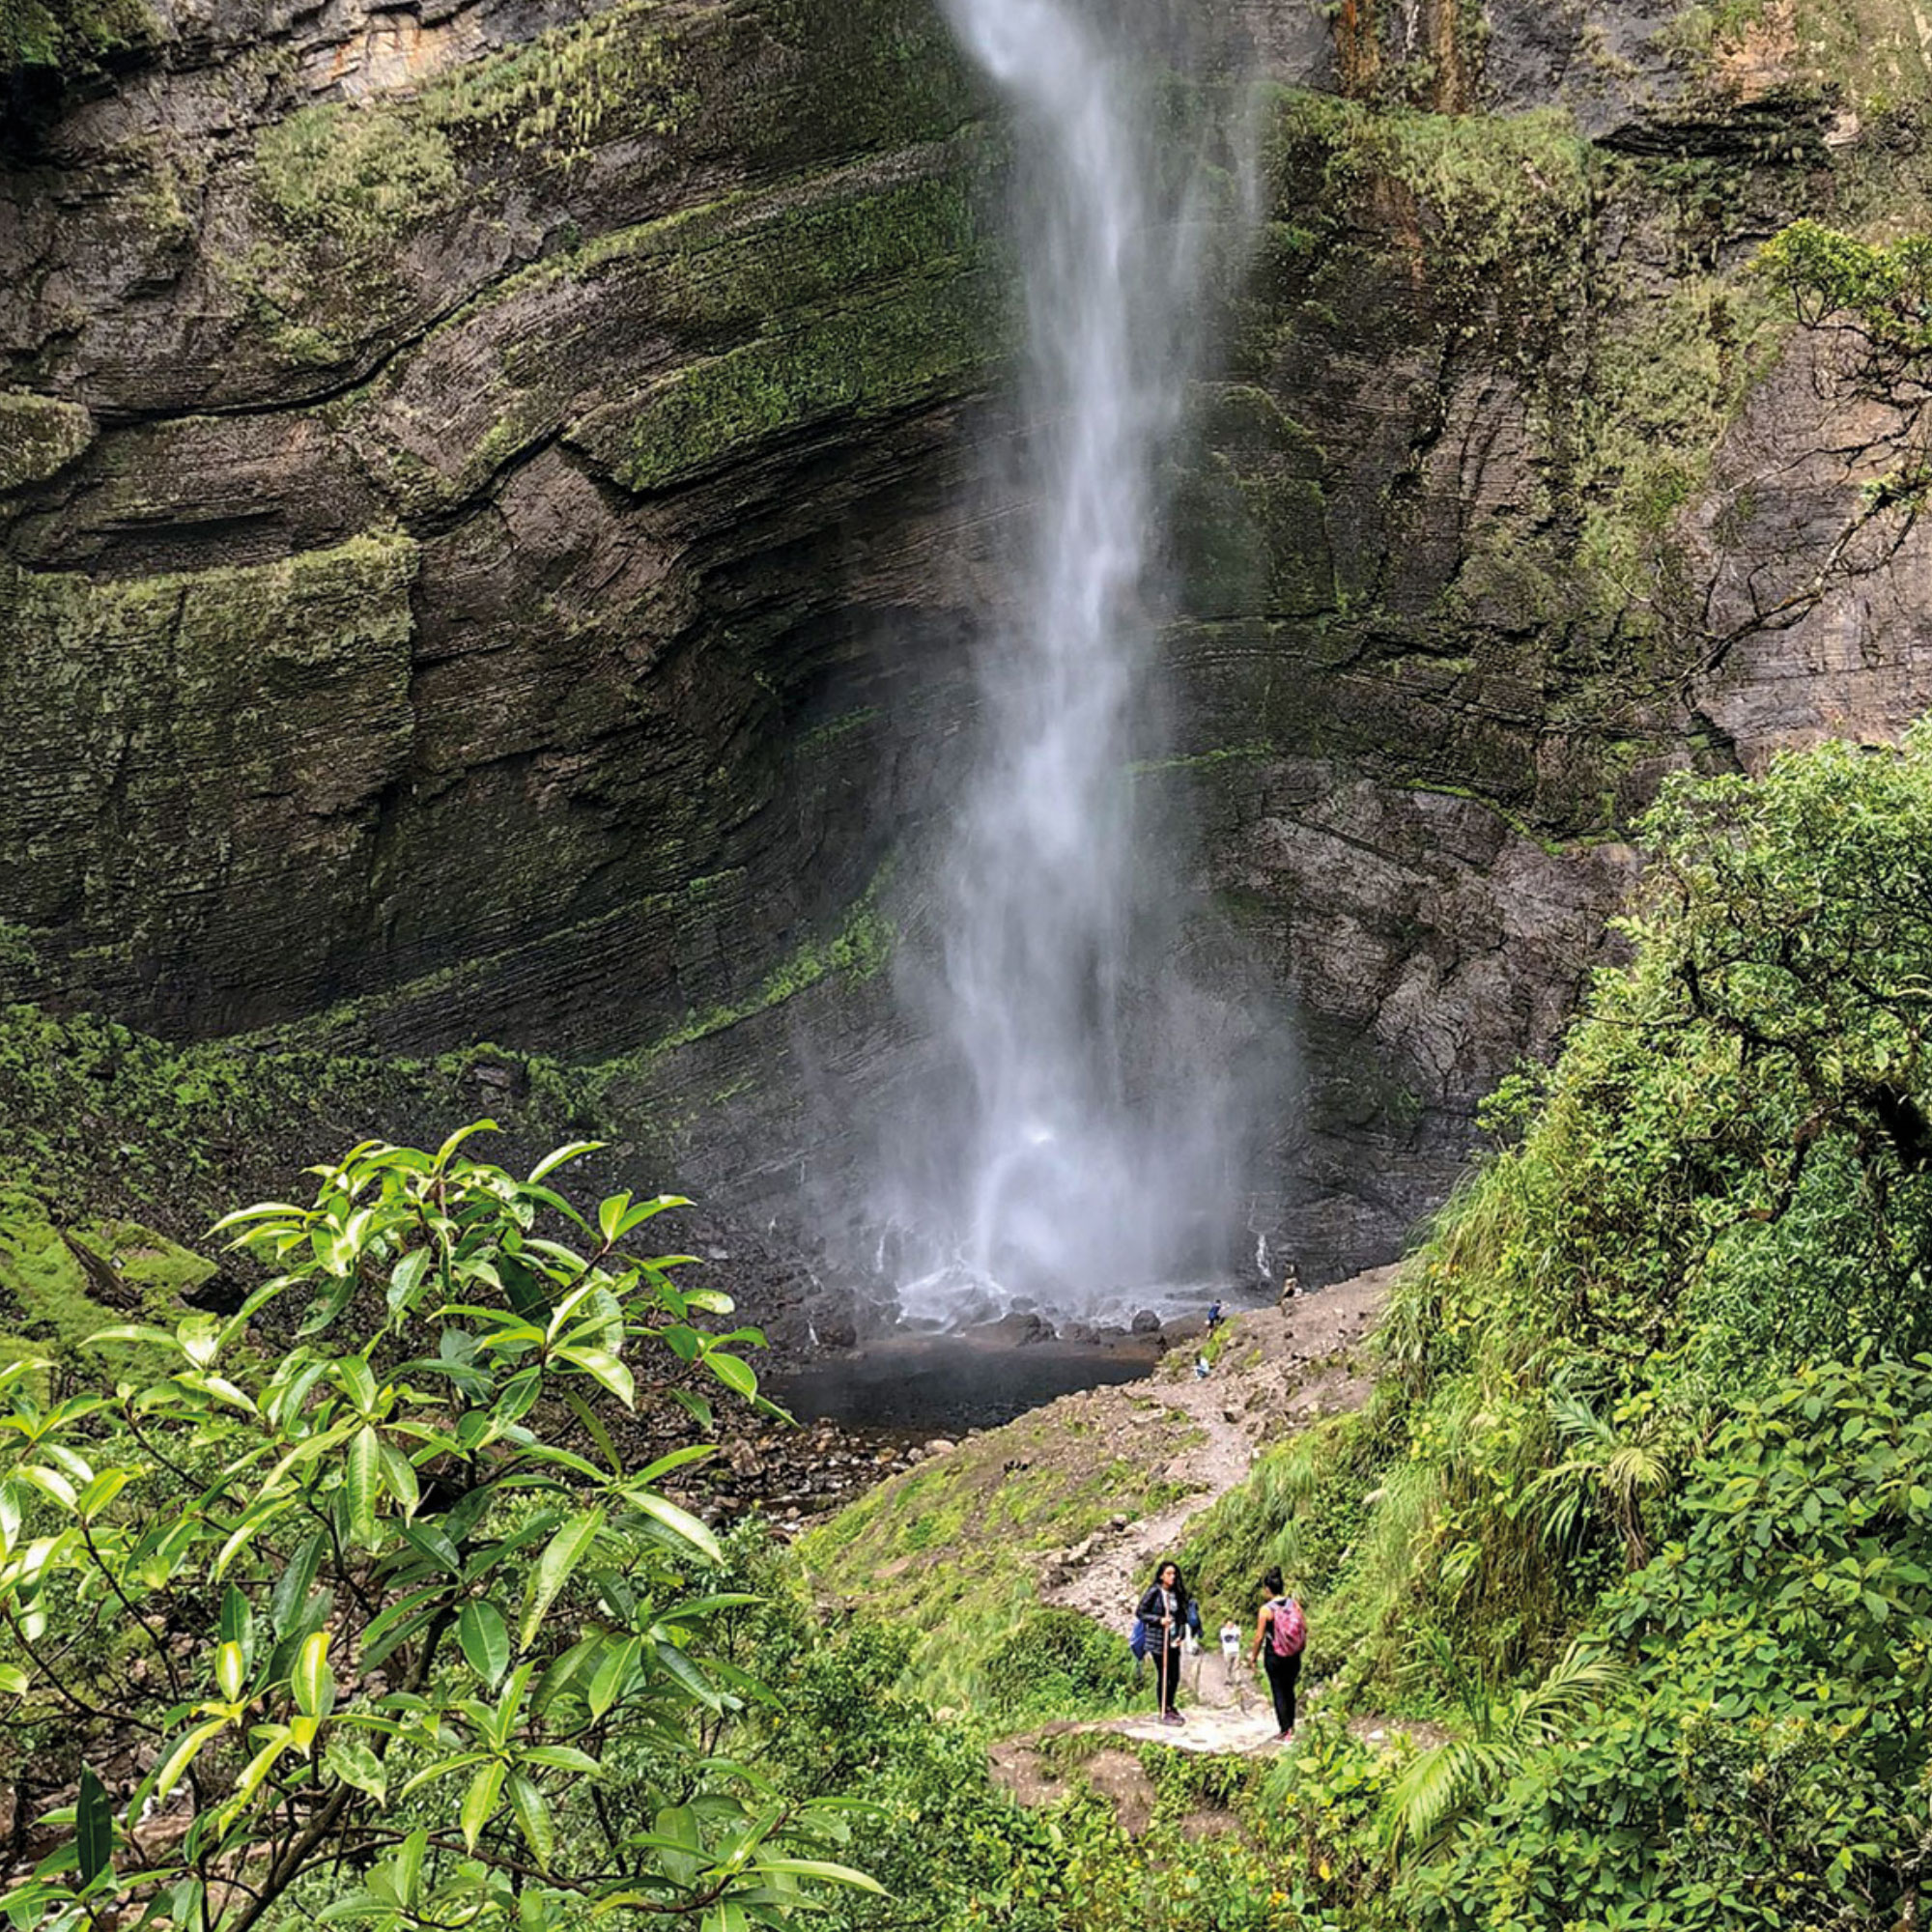 Gocta Wasserfall, Higlight im Norden Perus